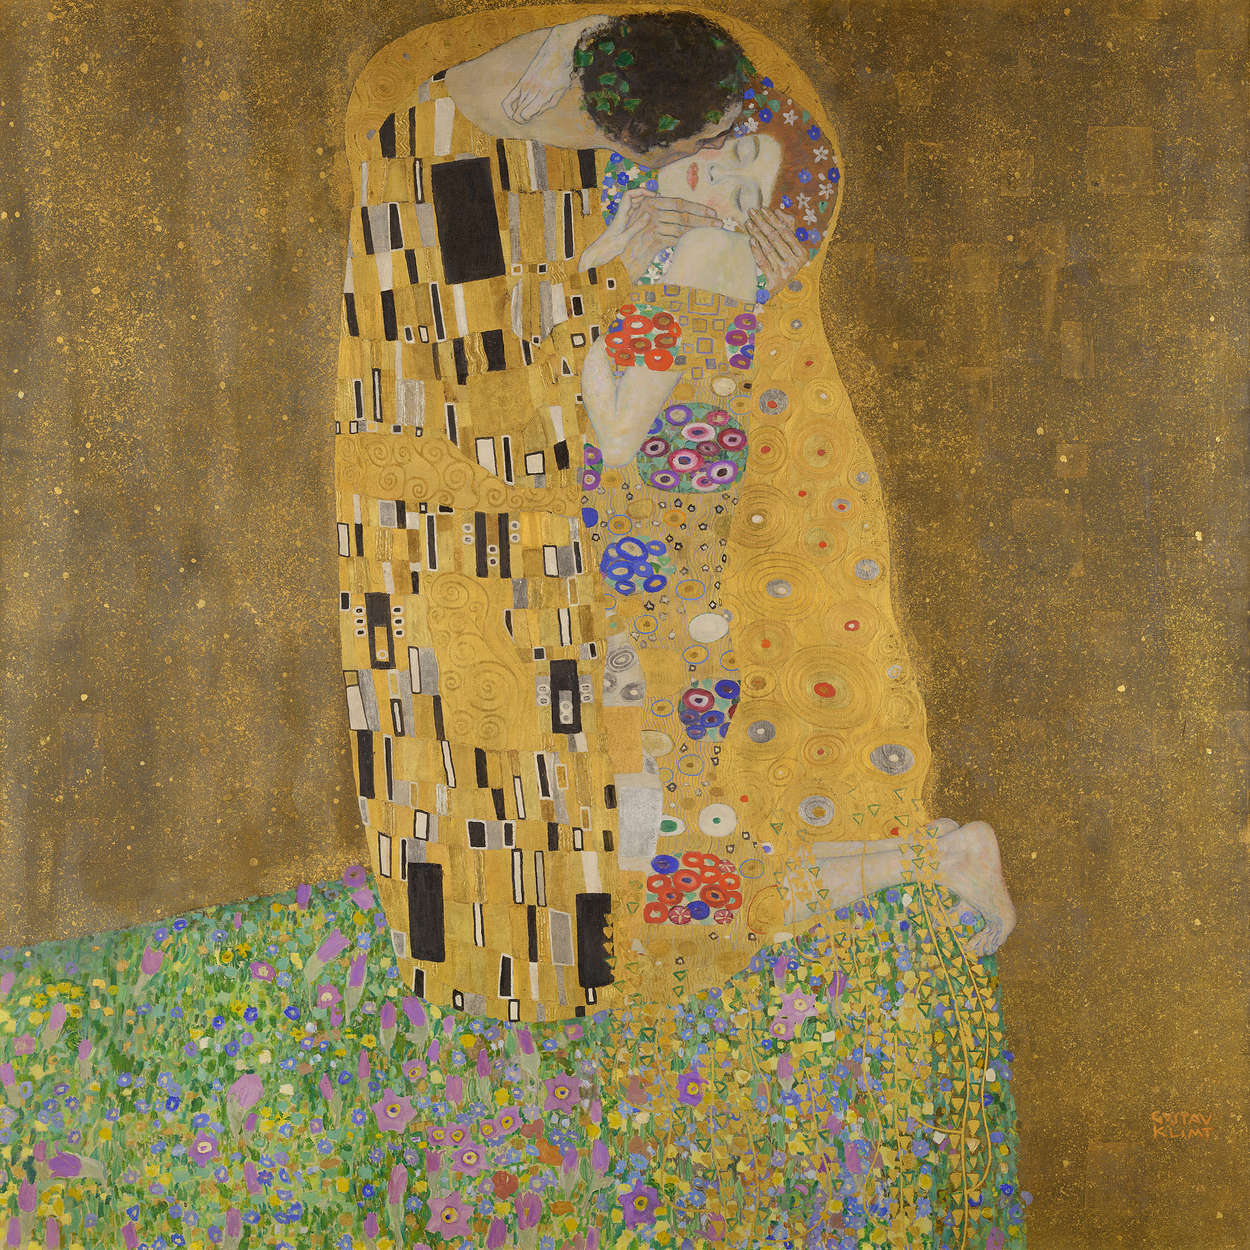             Mural "El beso" de Gustav Klimt
        